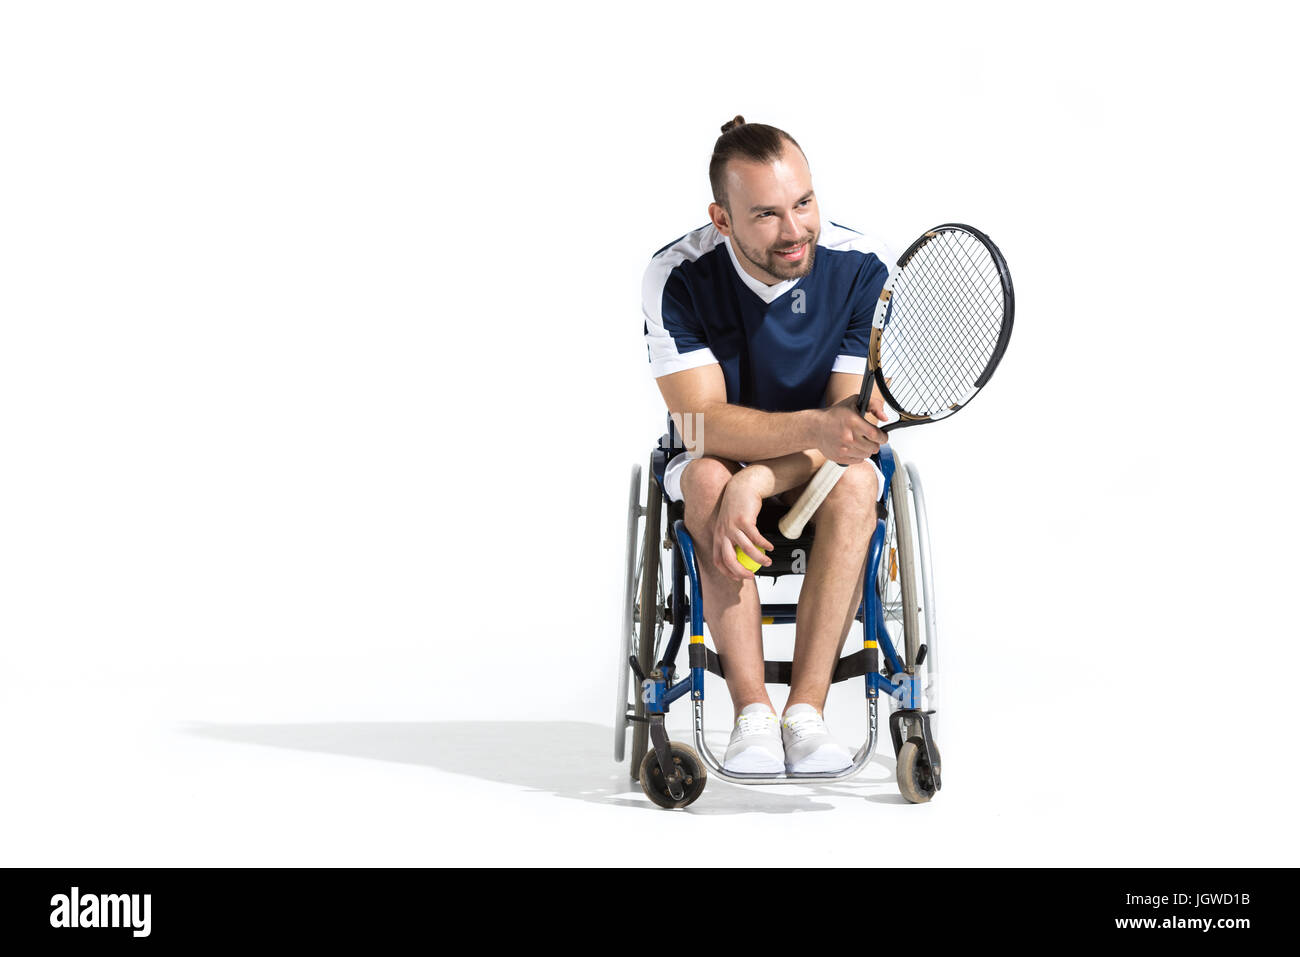 Smiling young man avec raquette de tennis en fauteuil roulant et assis à l'écart Banque D'Images